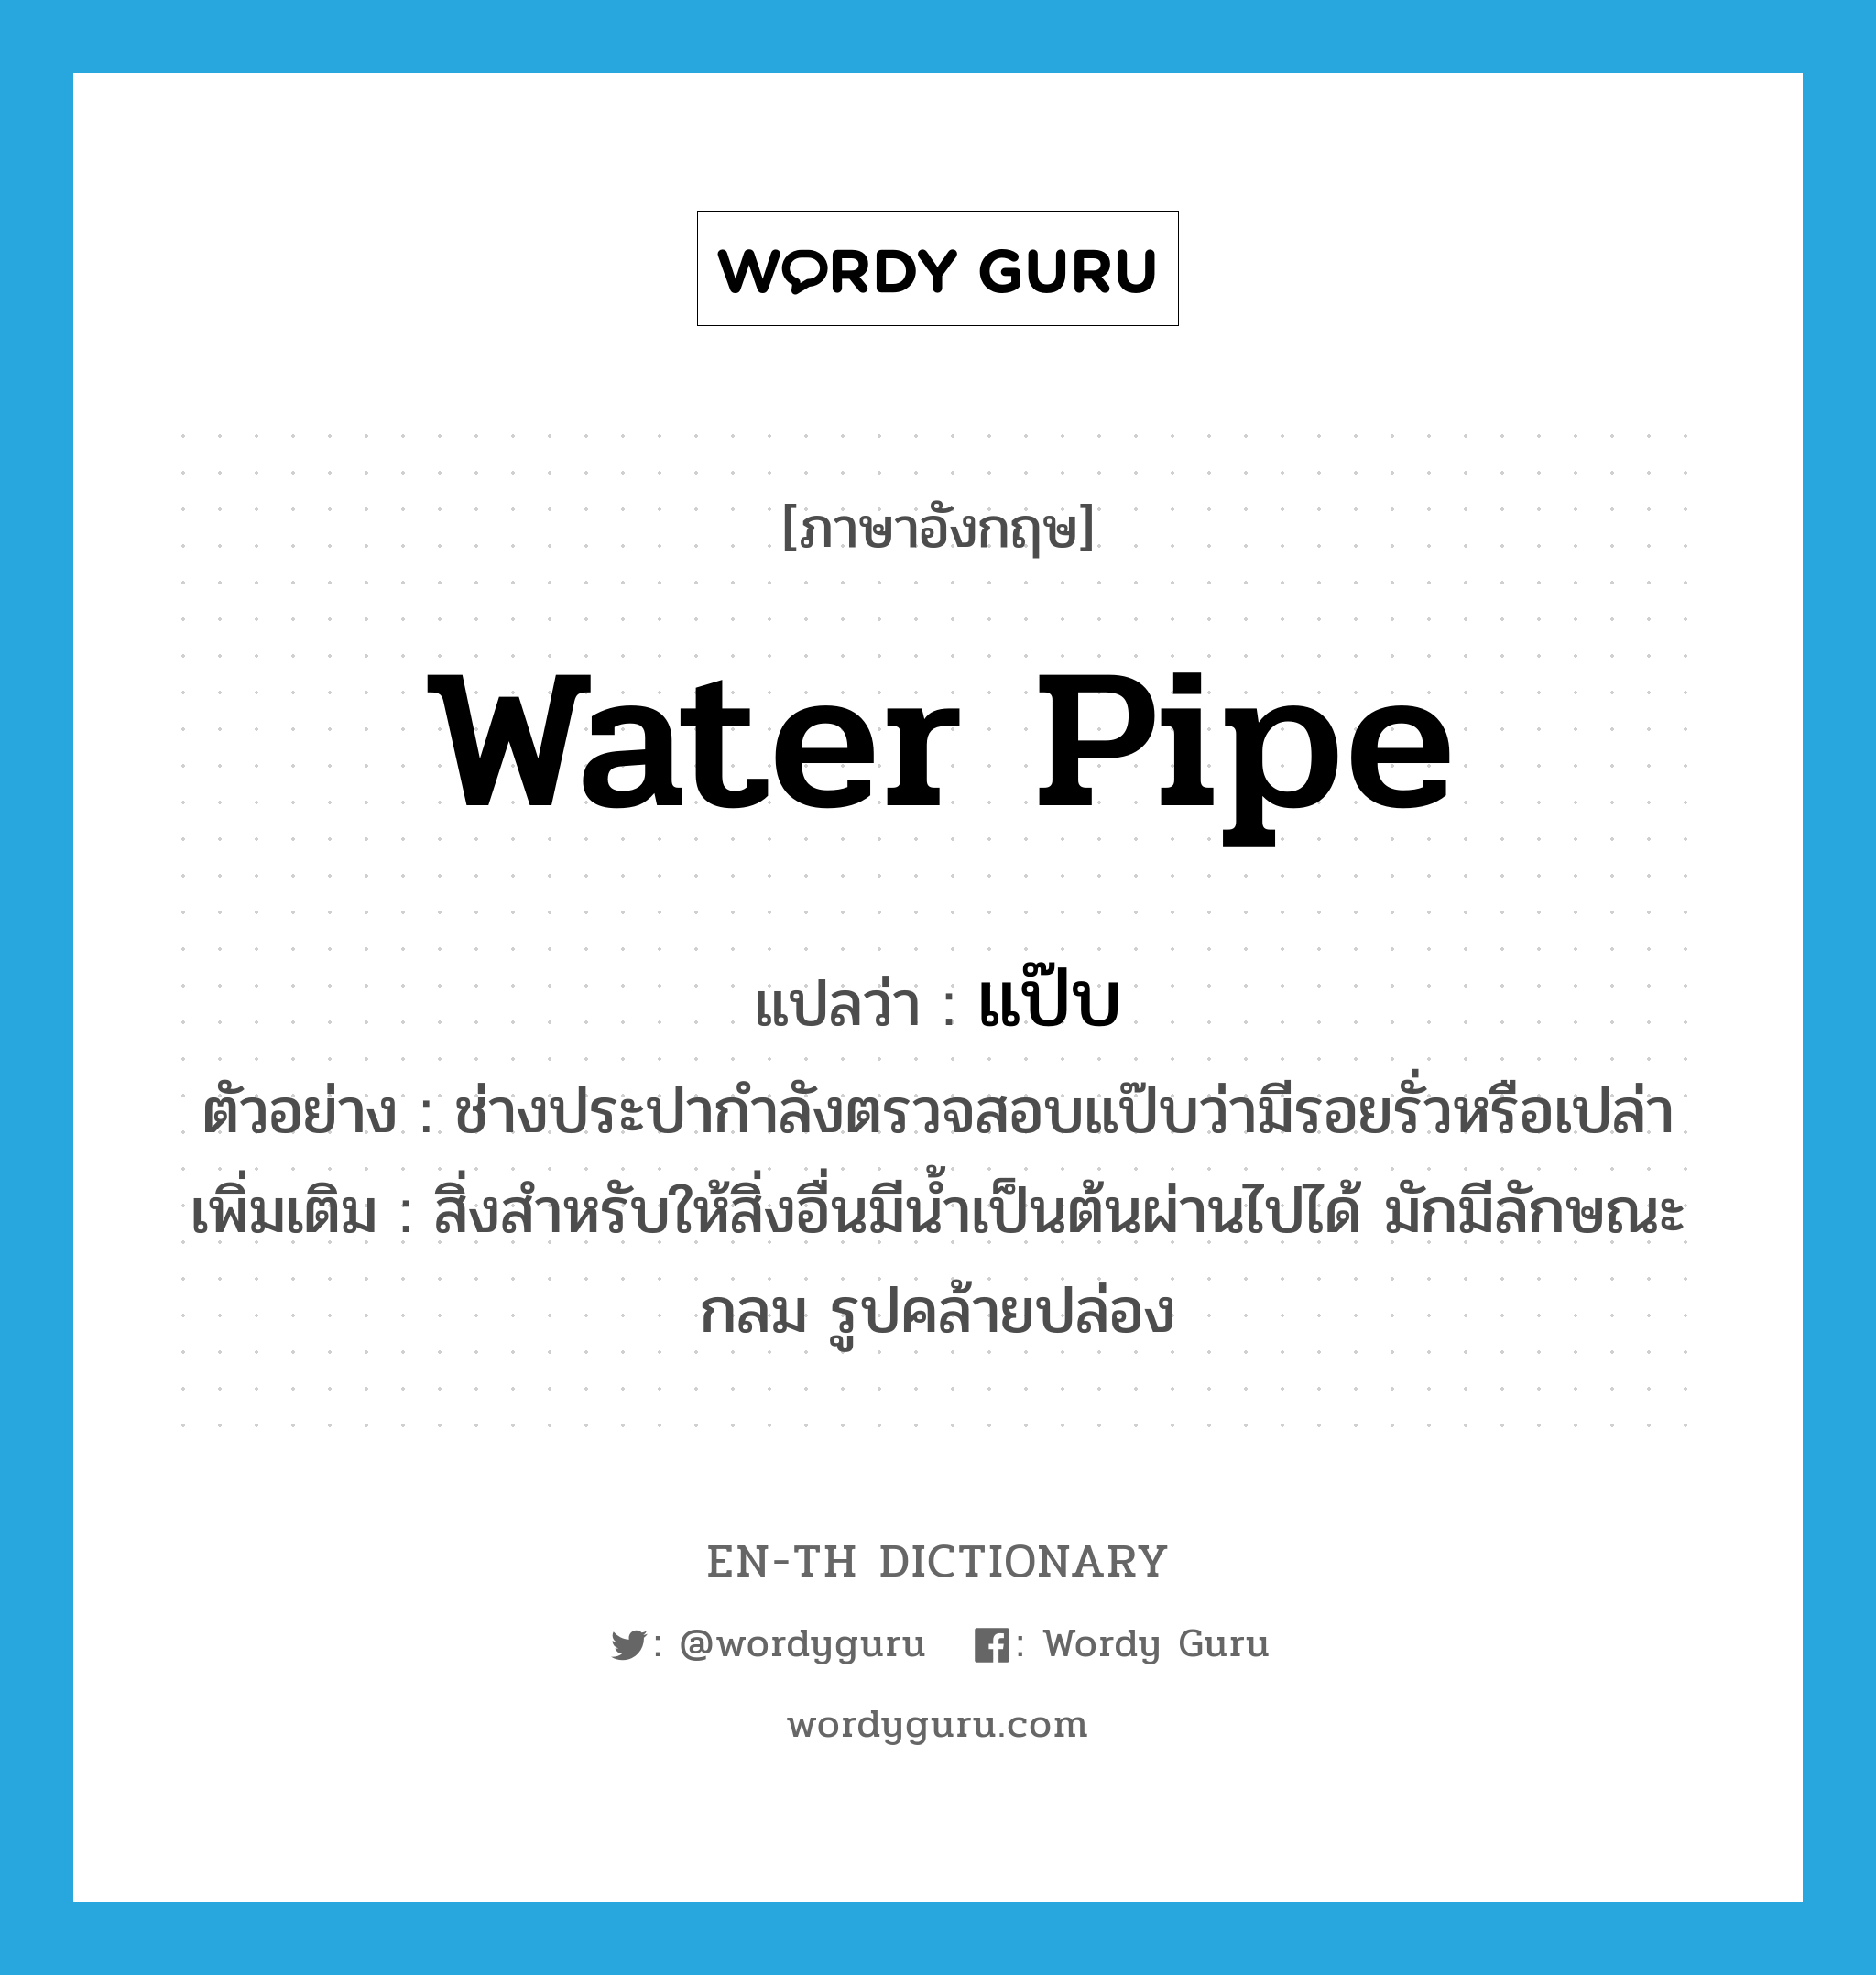 water pipe แปลว่า?, คำศัพท์ภาษาอังกฤษ water pipe แปลว่า แป๊บ ประเภท N ตัวอย่าง ช่างประปากำลังตรวจสอบแป๊บว่ามีรอยรั่วหรือเปล่า เพิ่มเติม สิ่งสำหรับให้สิ่งอื่นมีน้ำเป็นต้นผ่านไปได้ มักมีลักษณะกลม รูปคล้ายปล่อง หมวด N